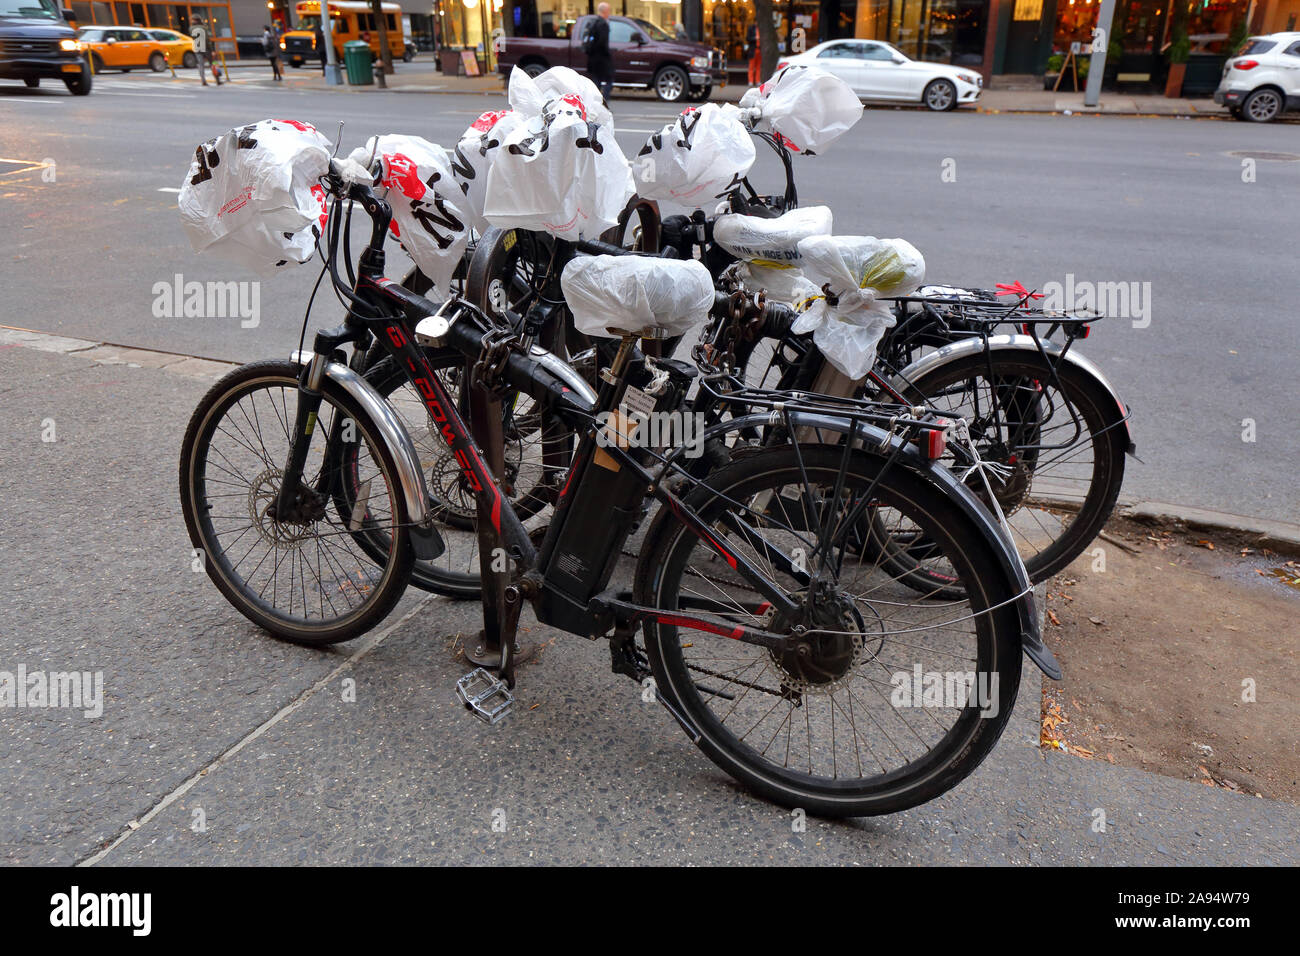 Me encanta NY bolsas de plástico envuelto alrededor de manillar y asientos de bicicleta de bicicletas eléctricas utilizadas por el personal de entrega de pedidos Foto de stock